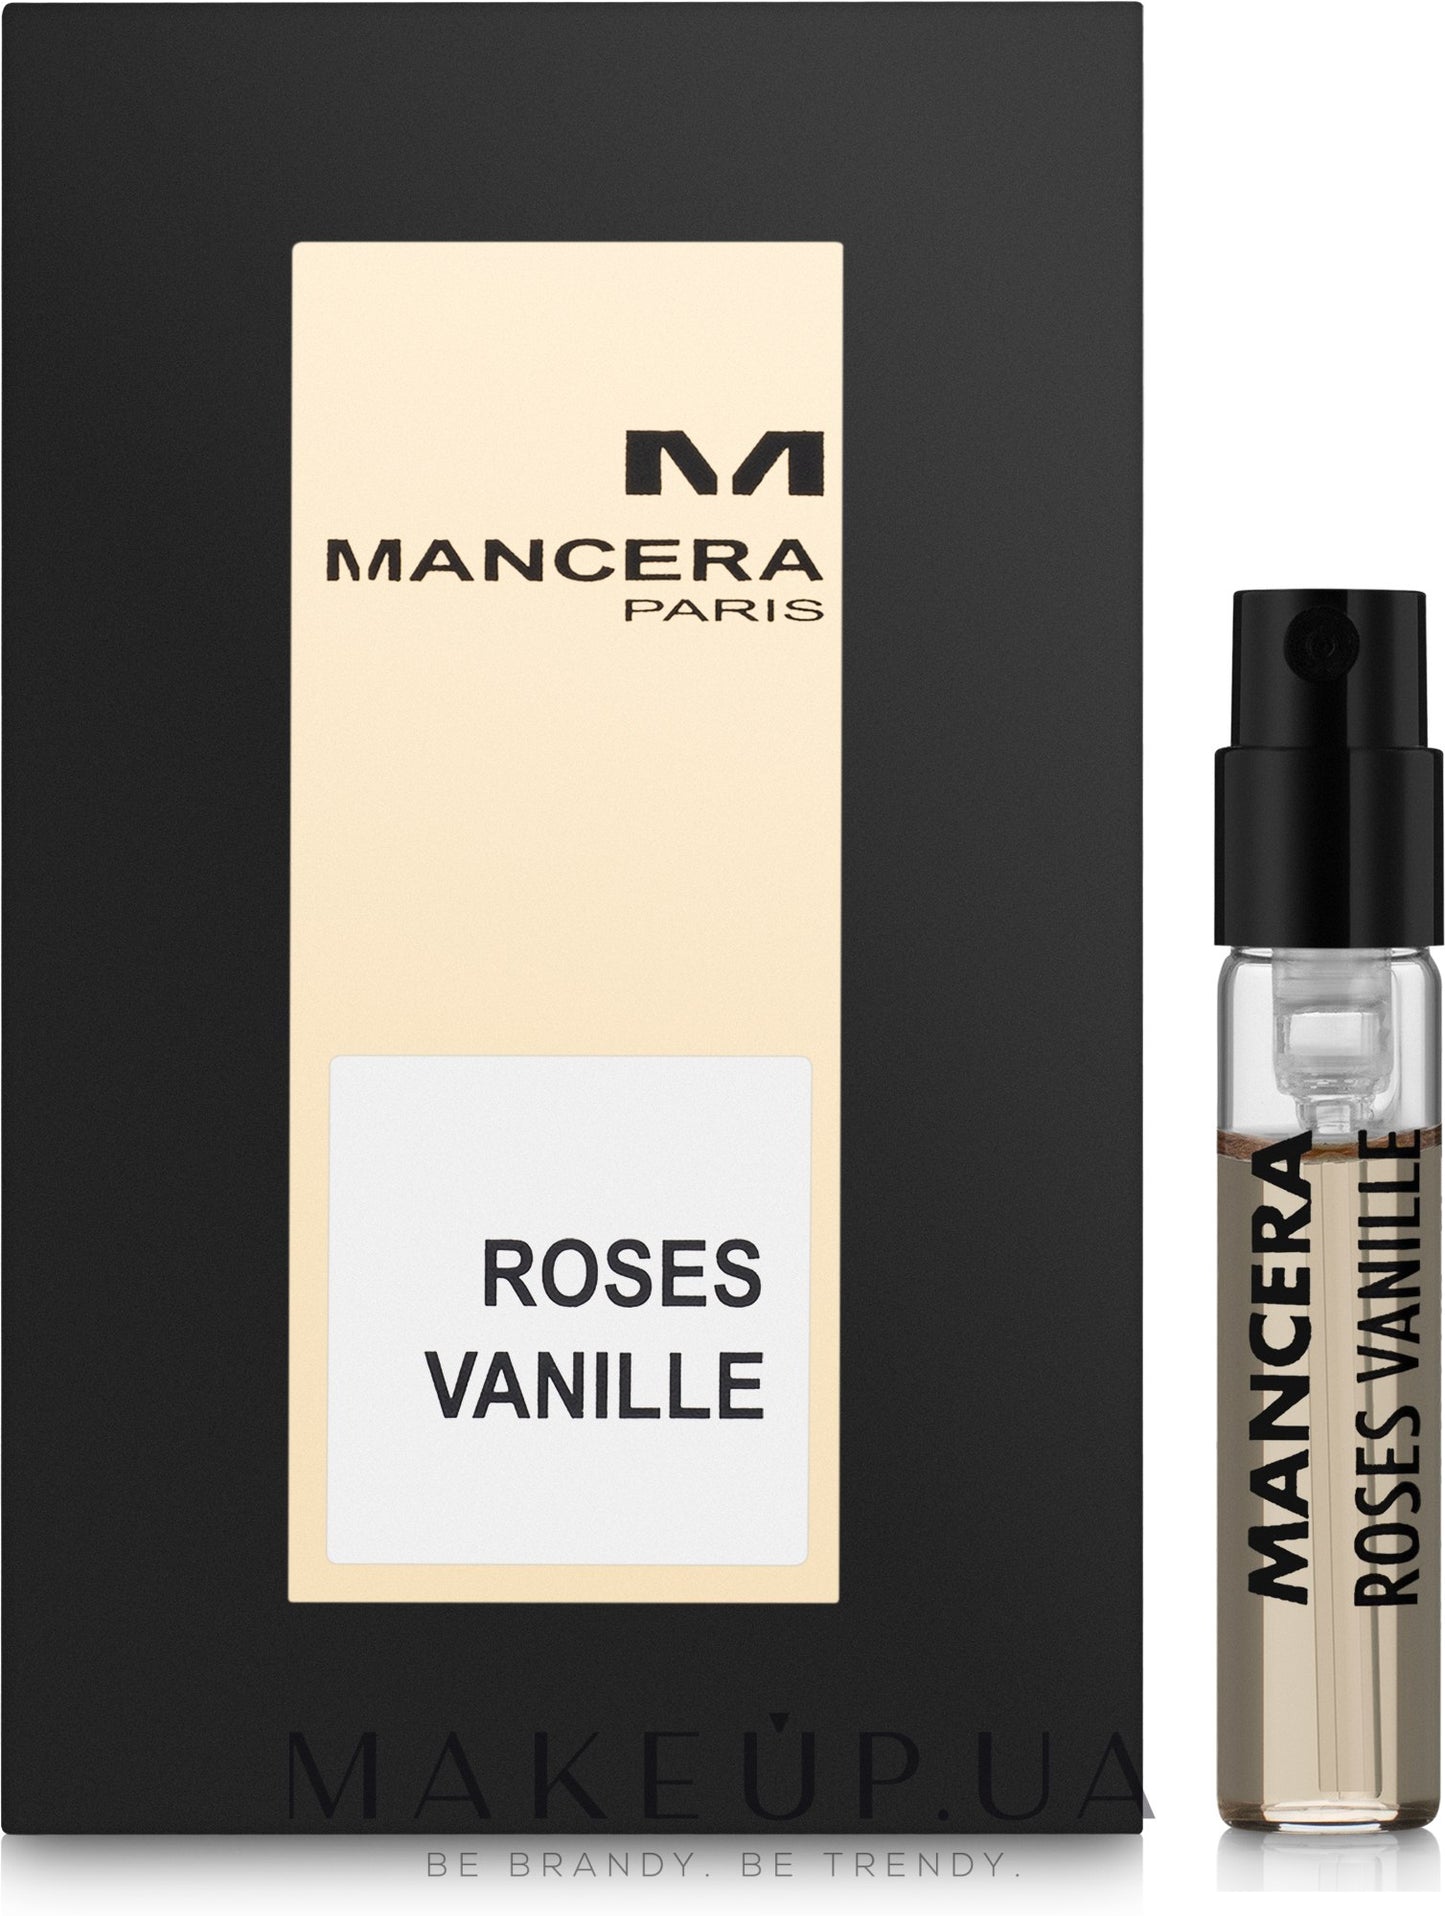 Mancera Roses Vanille prover-Mancera Roses Vanille-Mancera-2ml officiellt prov-creedparfymprover